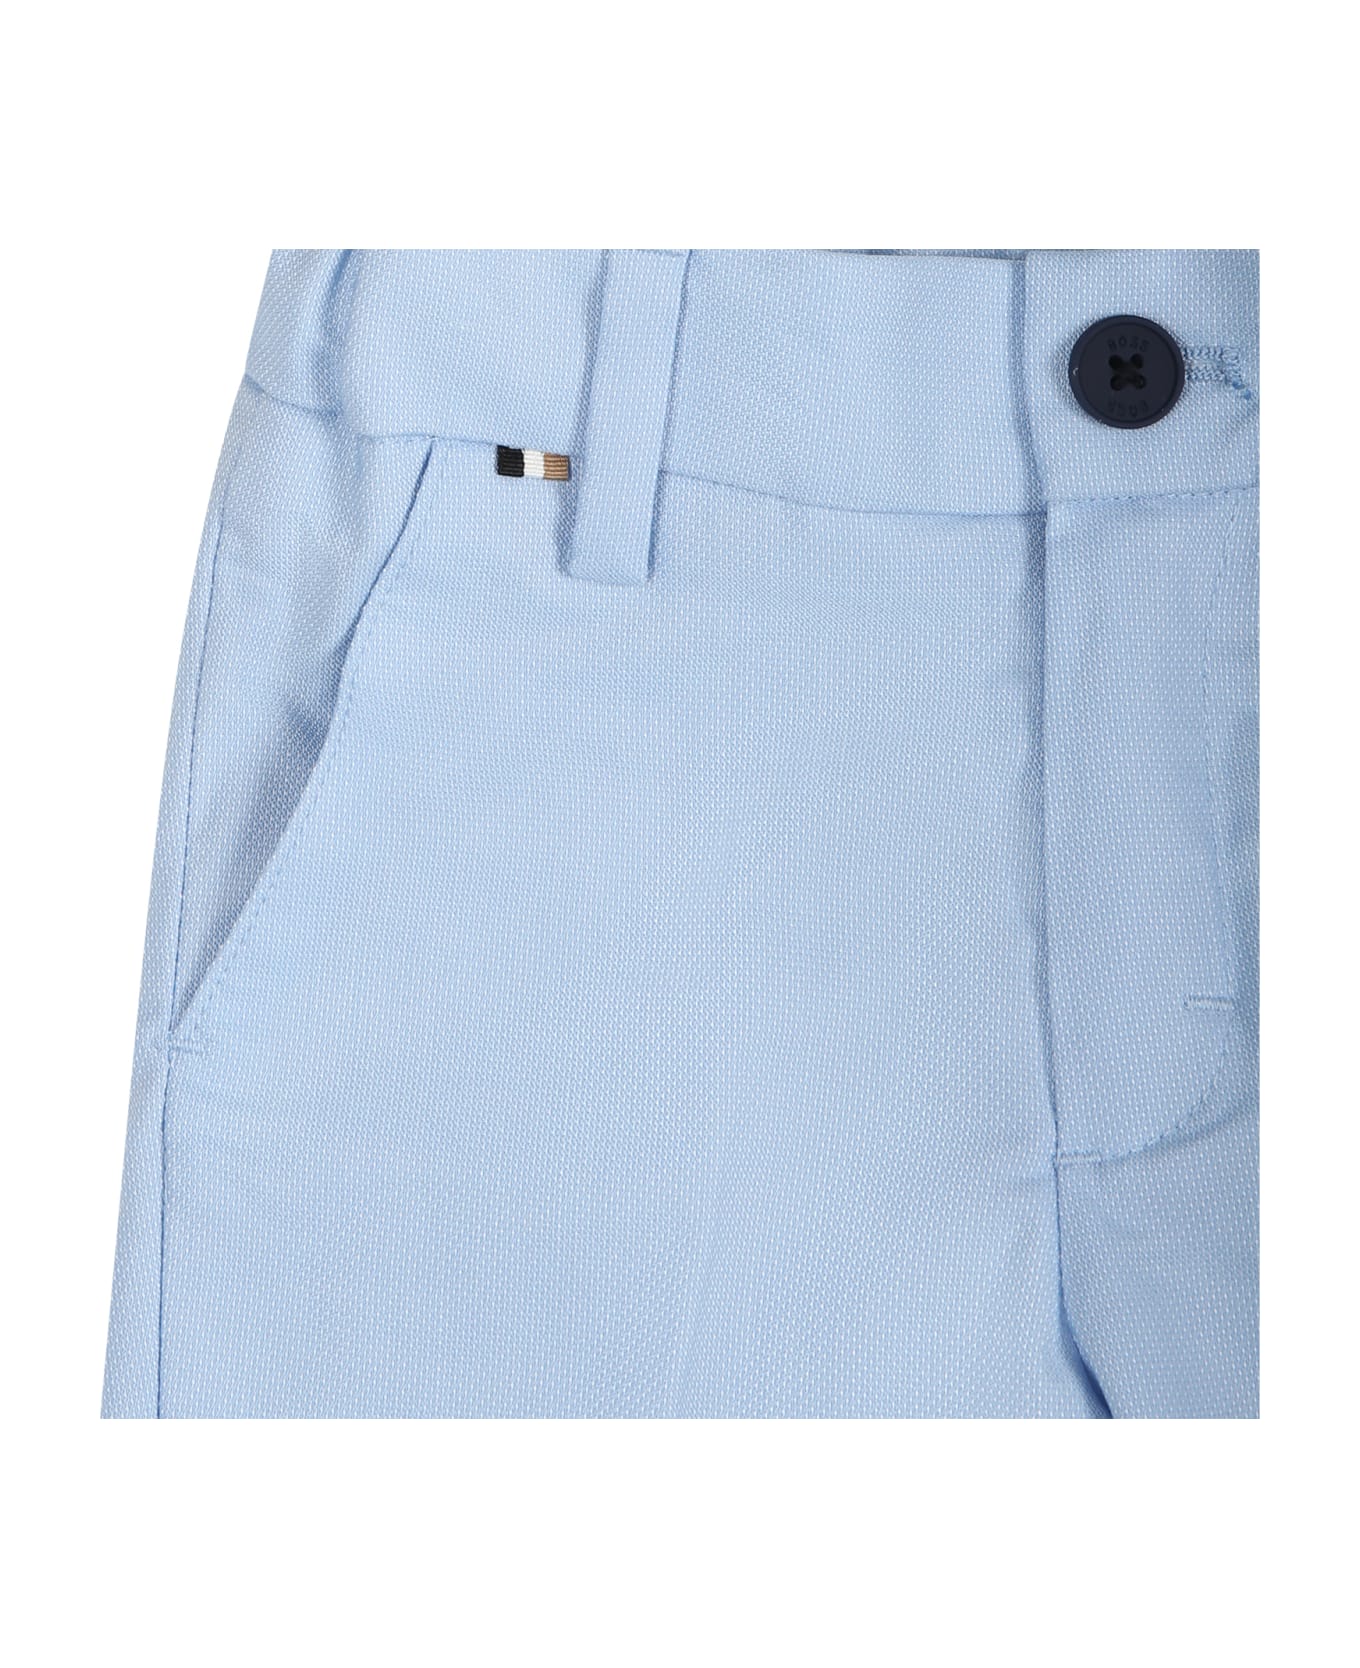 Hugo Boss Elegant Sky Blue Trousers For Baby Boy - Light Blue